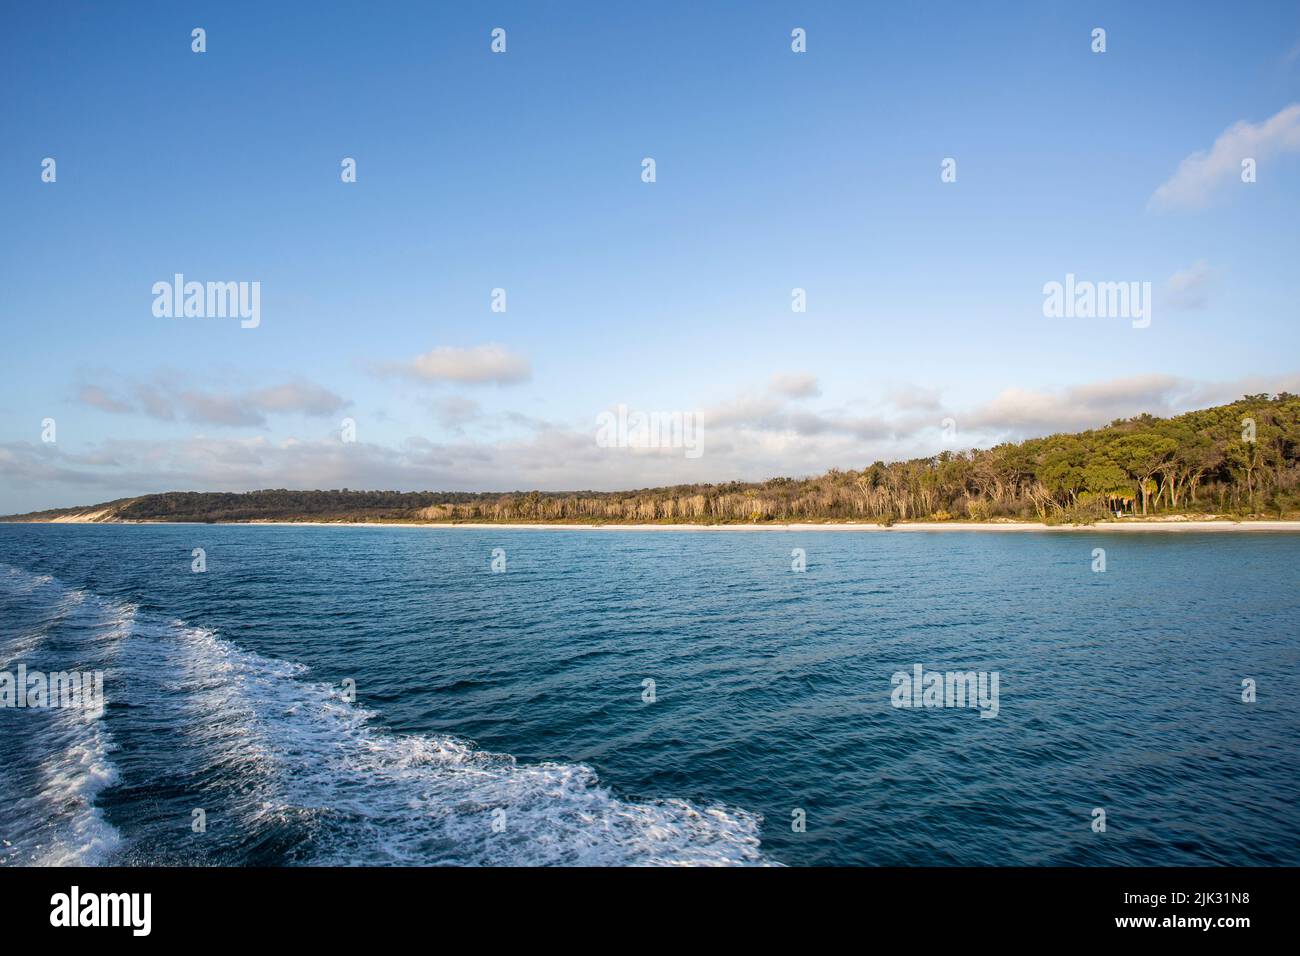 Vista de la costa oeste de la isla Fraser, conocida por el nombre aborigen de K’gari, una isla de arena de 122 km de largo frente a la costa este de Australia Foto de stock